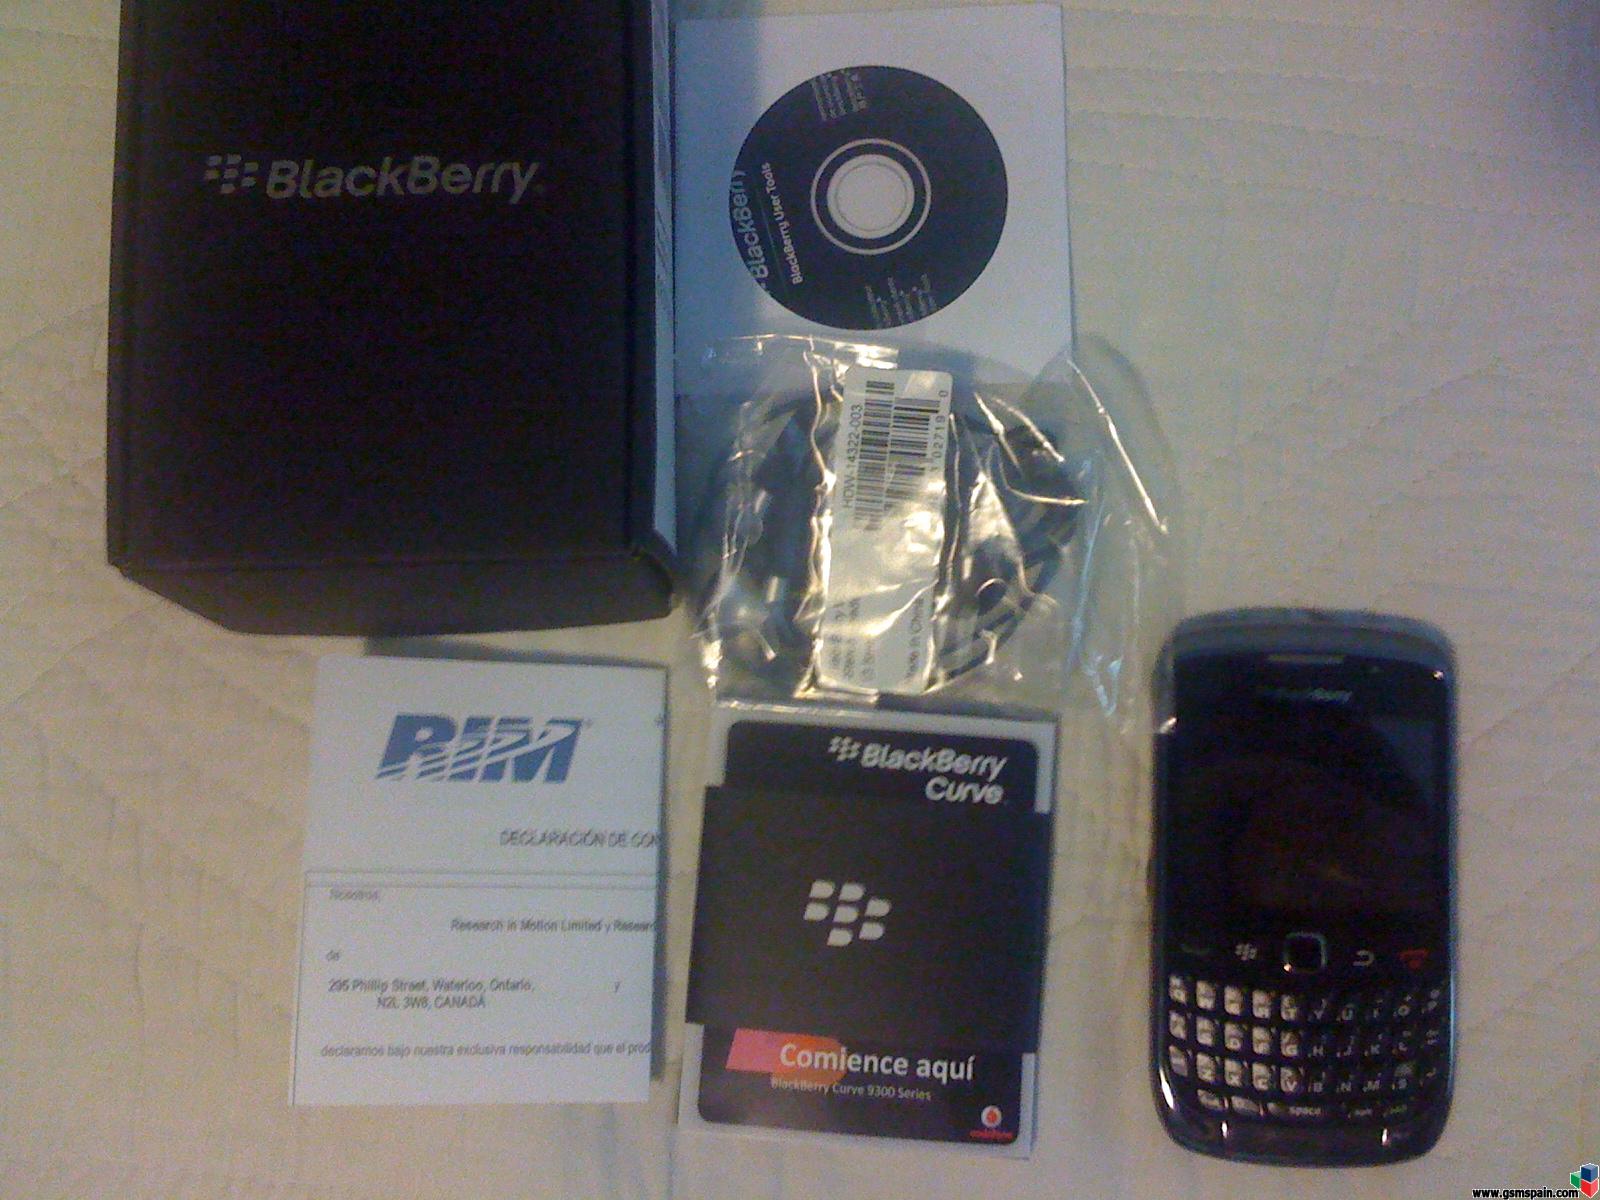 [COMPRO] Blackberry 9300 estado 9/10 140 gastos de envo incluidos